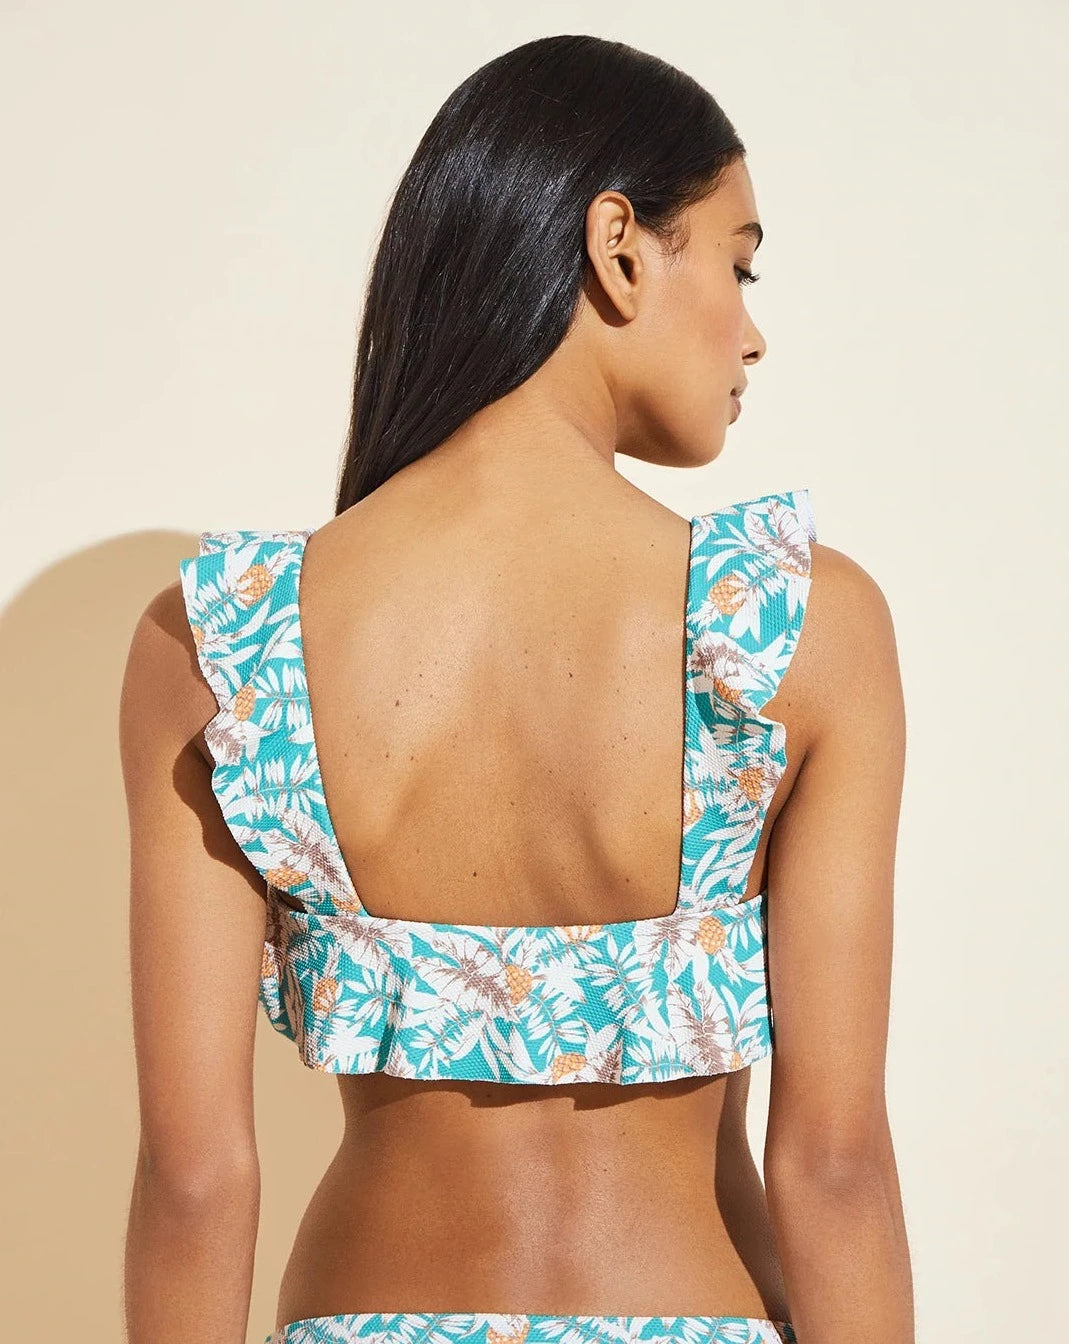 Textured Jane/Annia Bikini Set: Ocean Bay